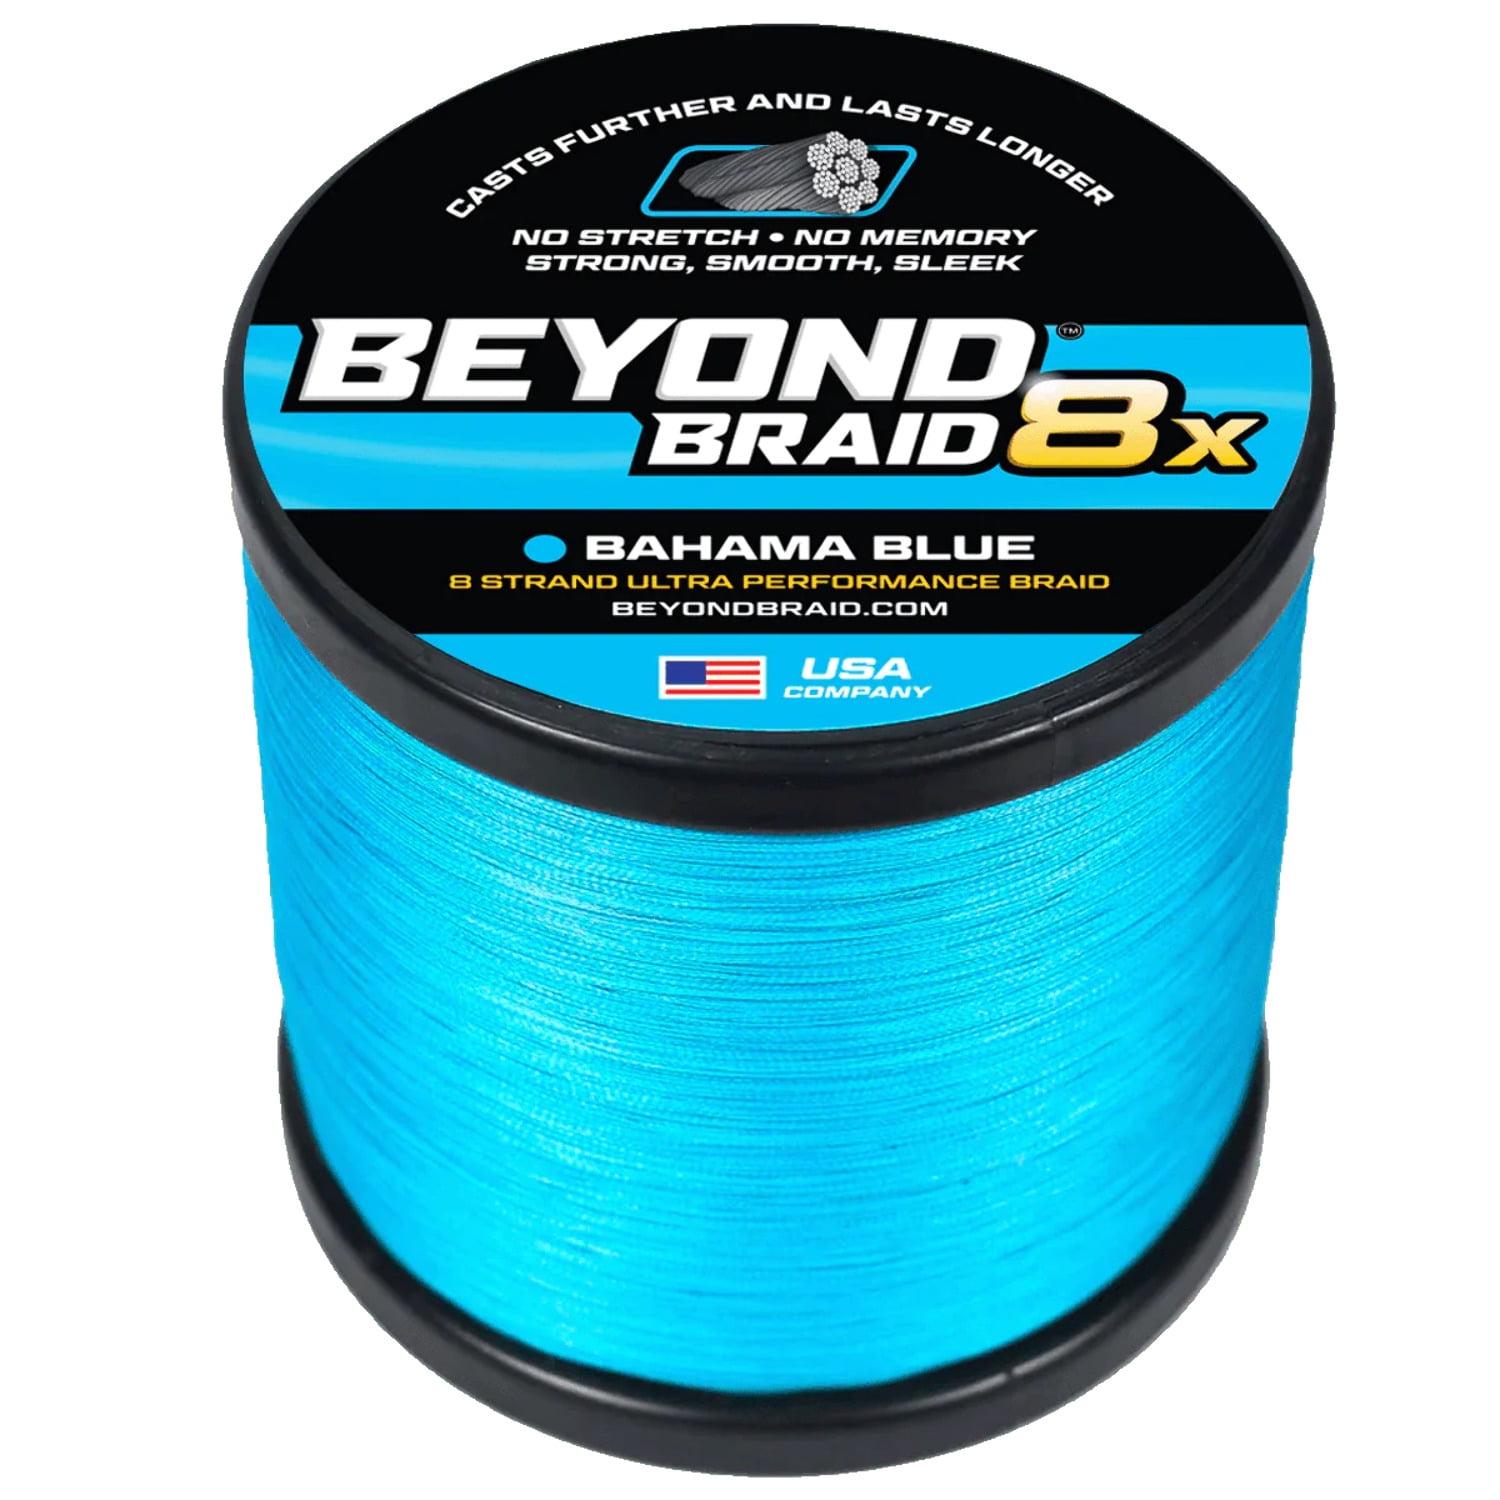 Beyond Braid Braided Fishing Line - Blue Wave - 300 Yards - 15 lb.